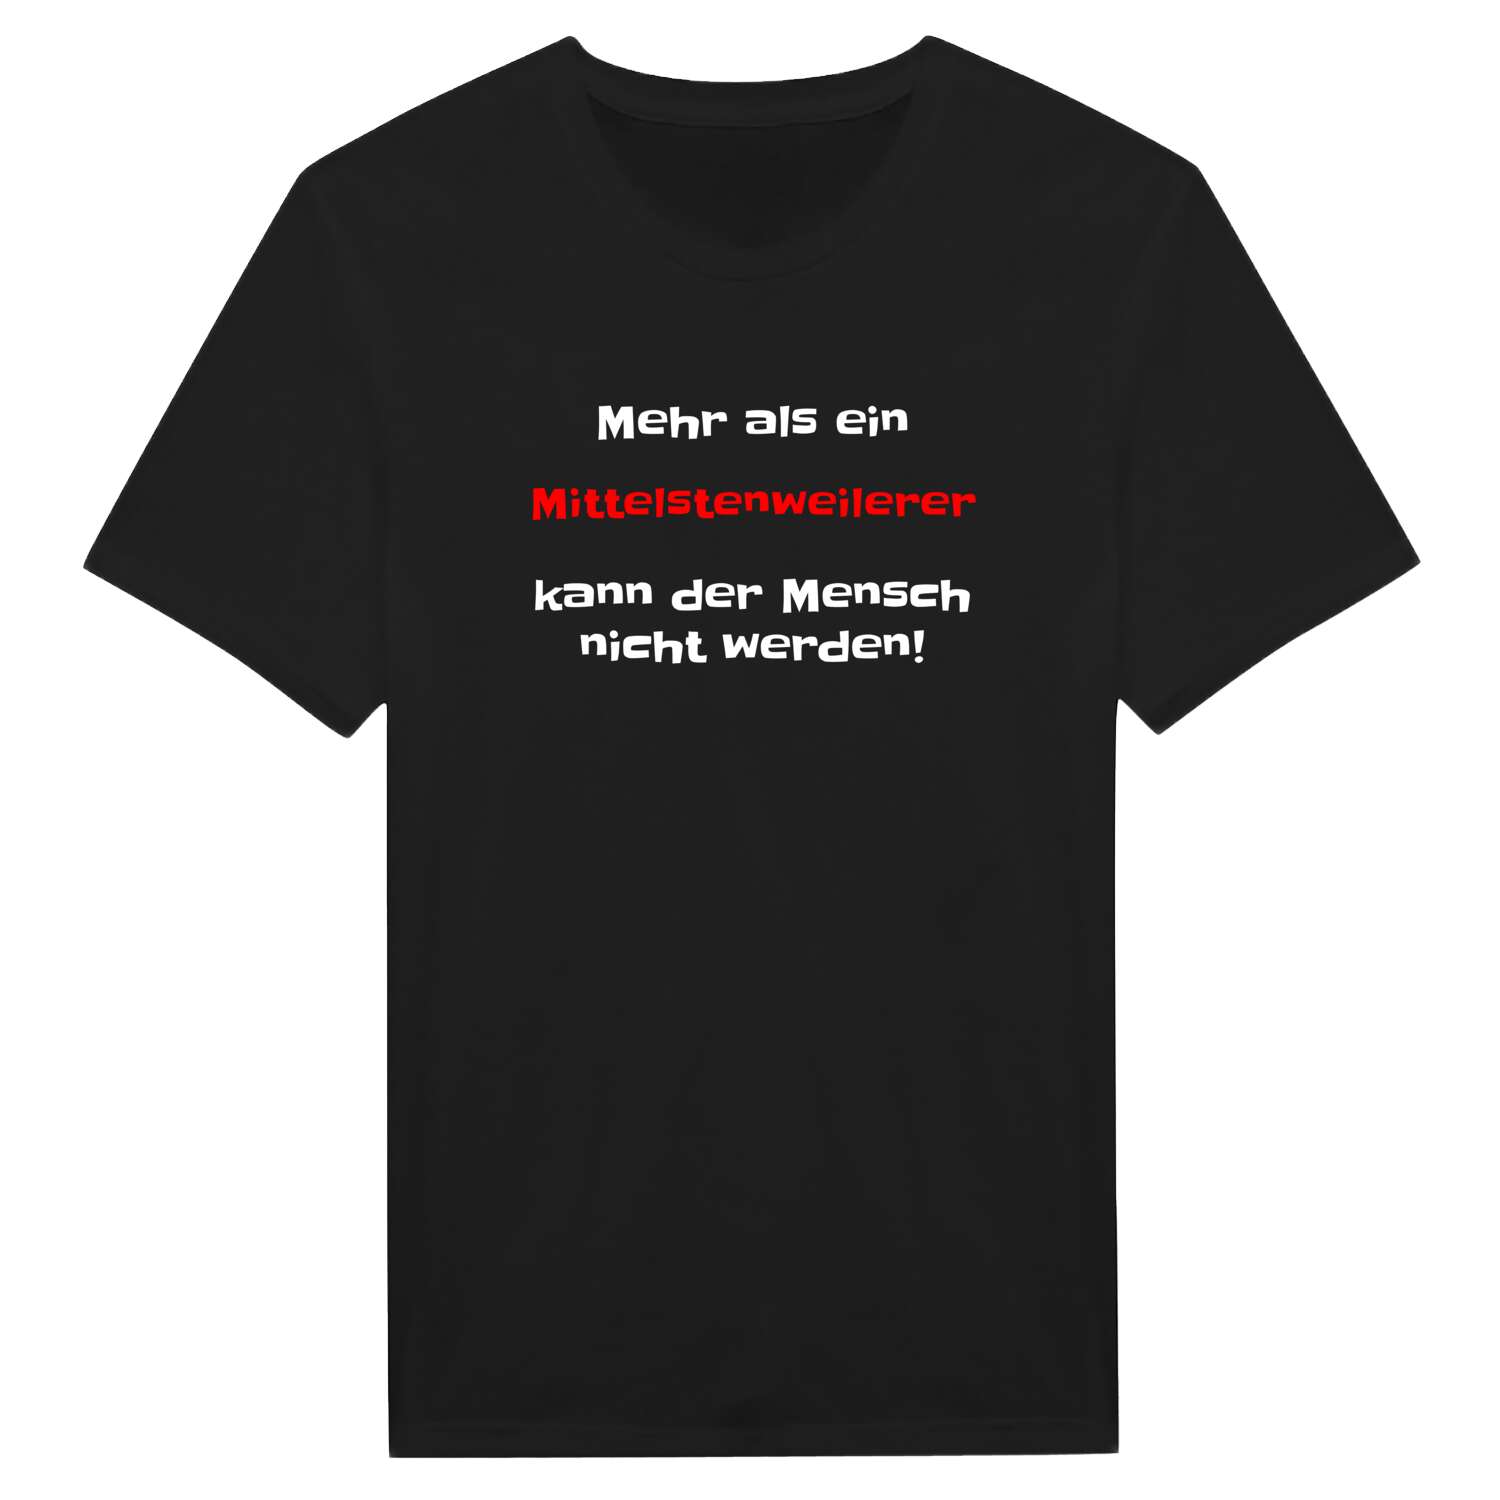 Mittelstenweiler T-Shirt »Mehr als ein«